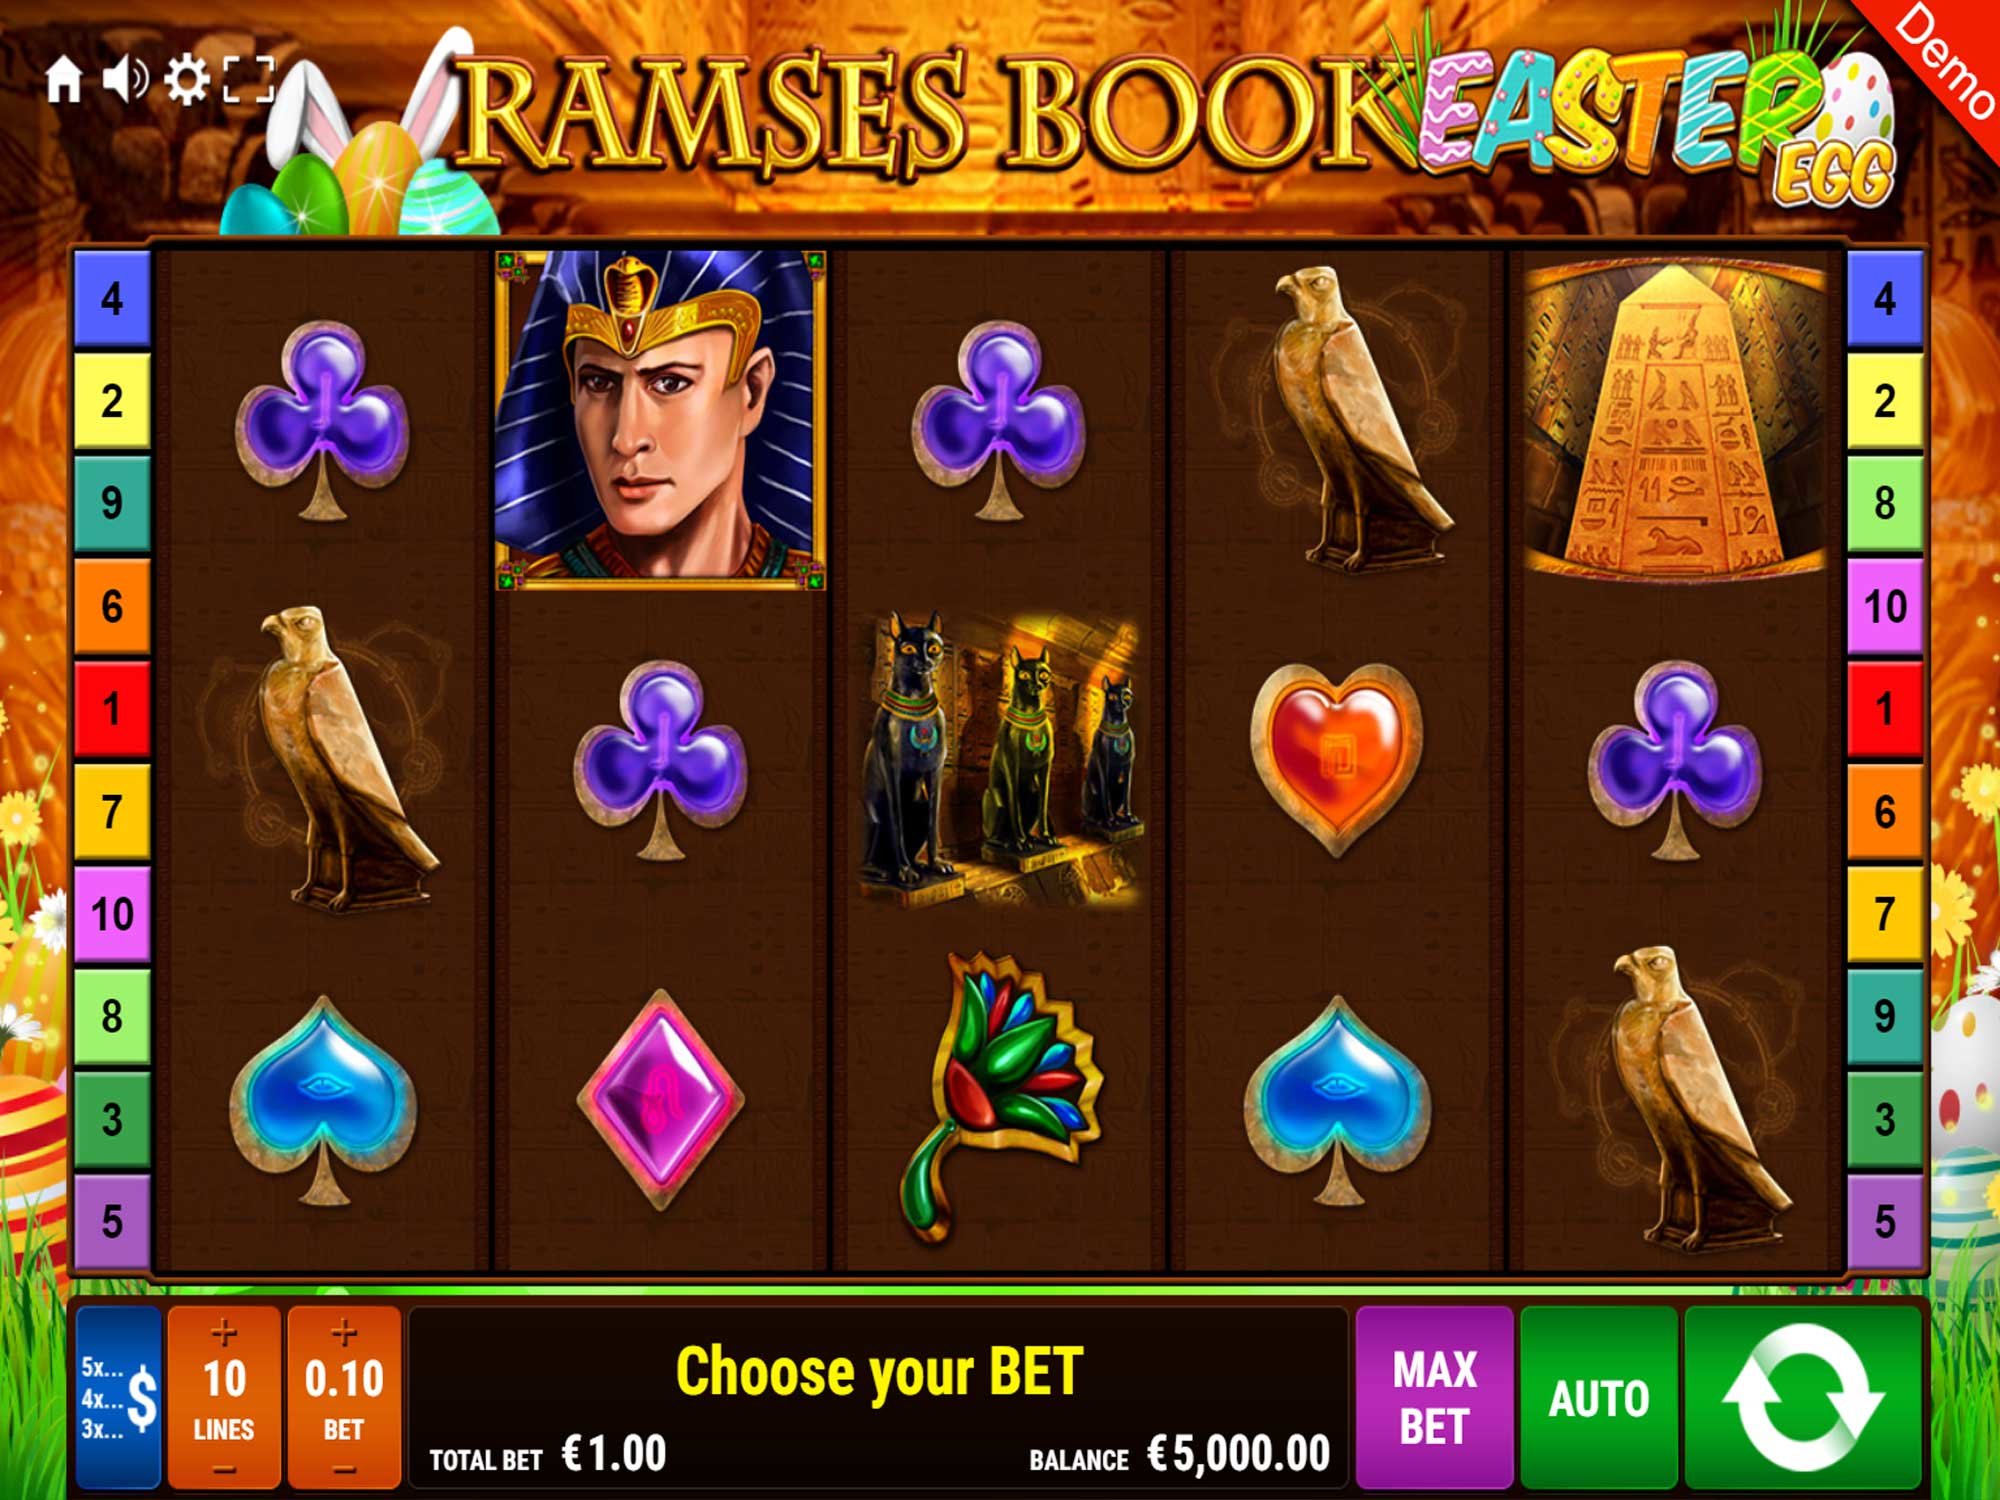 สล็อตออนไลน์: Ramses Book Easter Egg เกมสล็อต